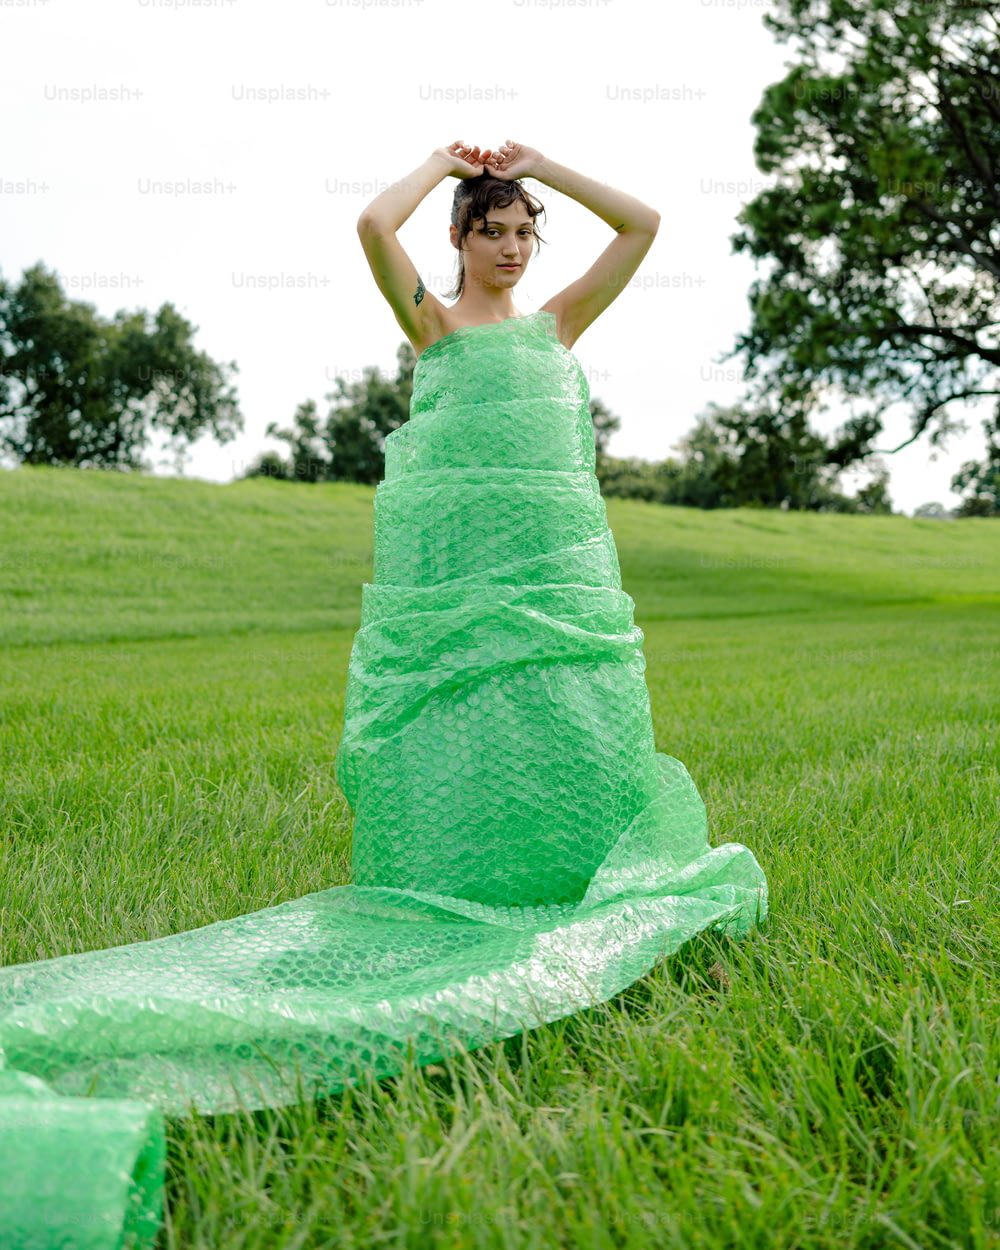 Eine Frau in einem grünen Kleid sitzt im Gras